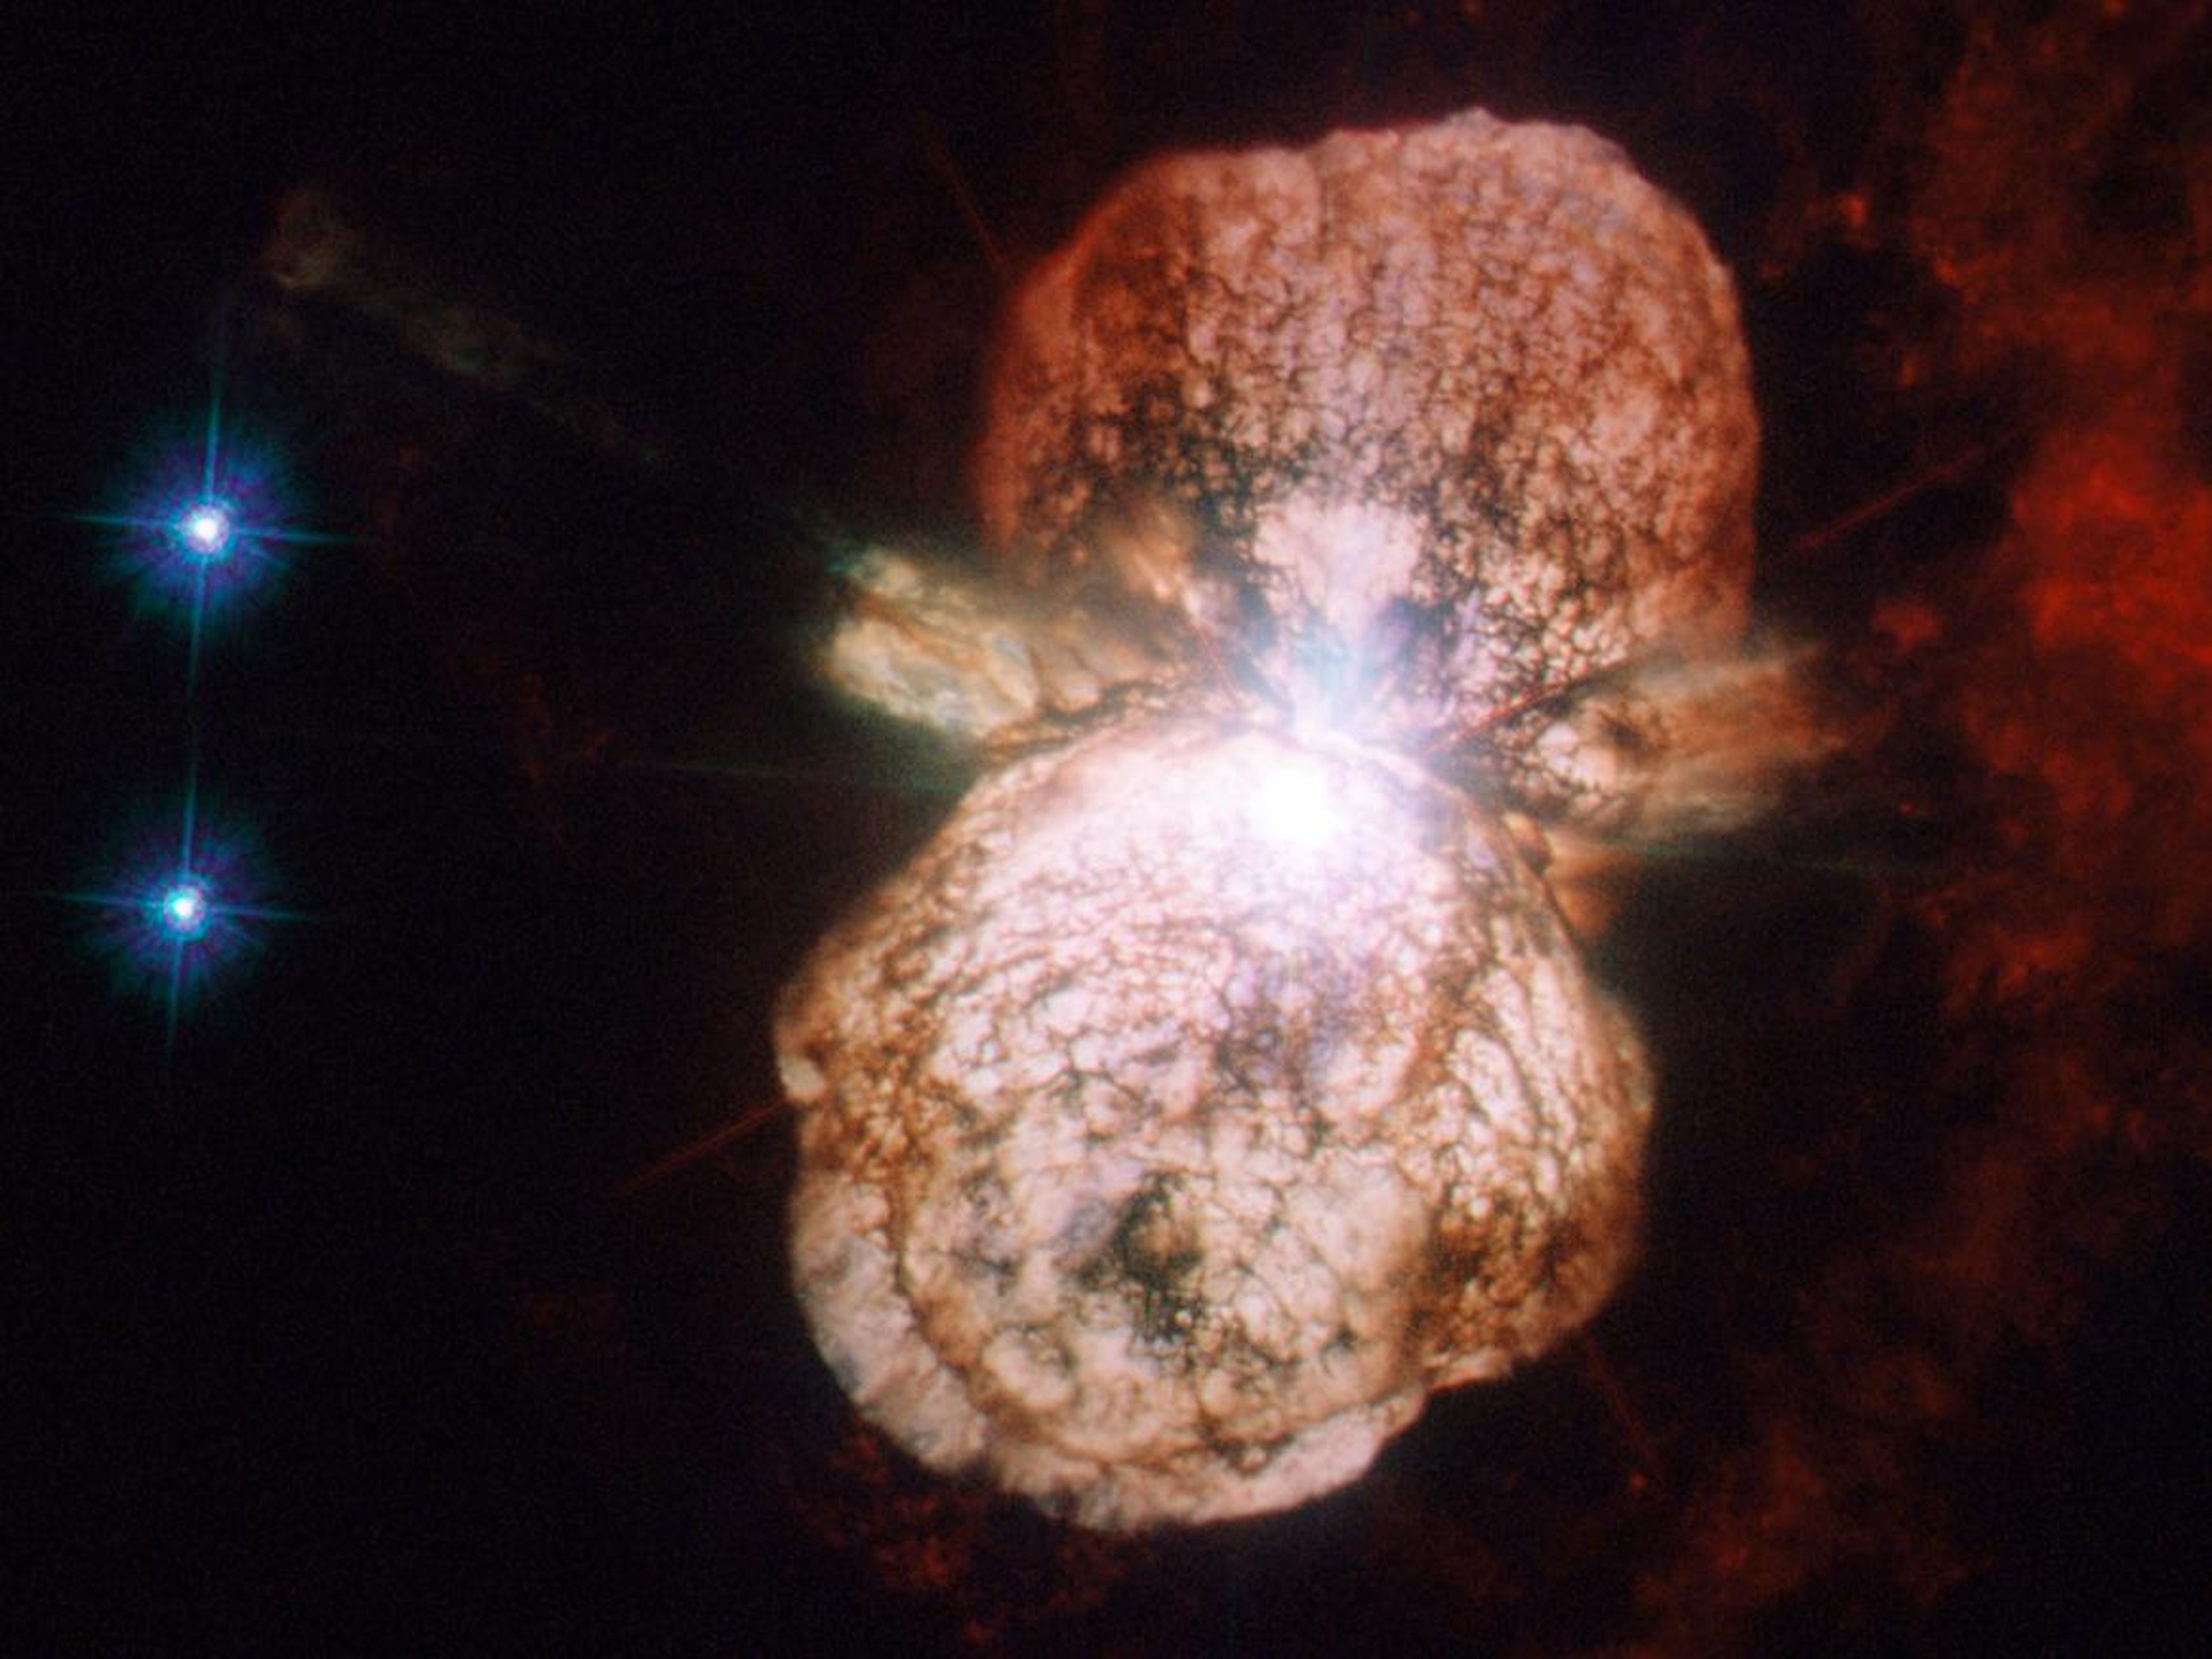 La estrella más grande del sistema, Eta Carinae, en luz ultravioleta y visible a medida que se acerca el final de su vida con una probable explosión de supernova. Después de la explosión, el material expulsado puede formar una nebulosa.